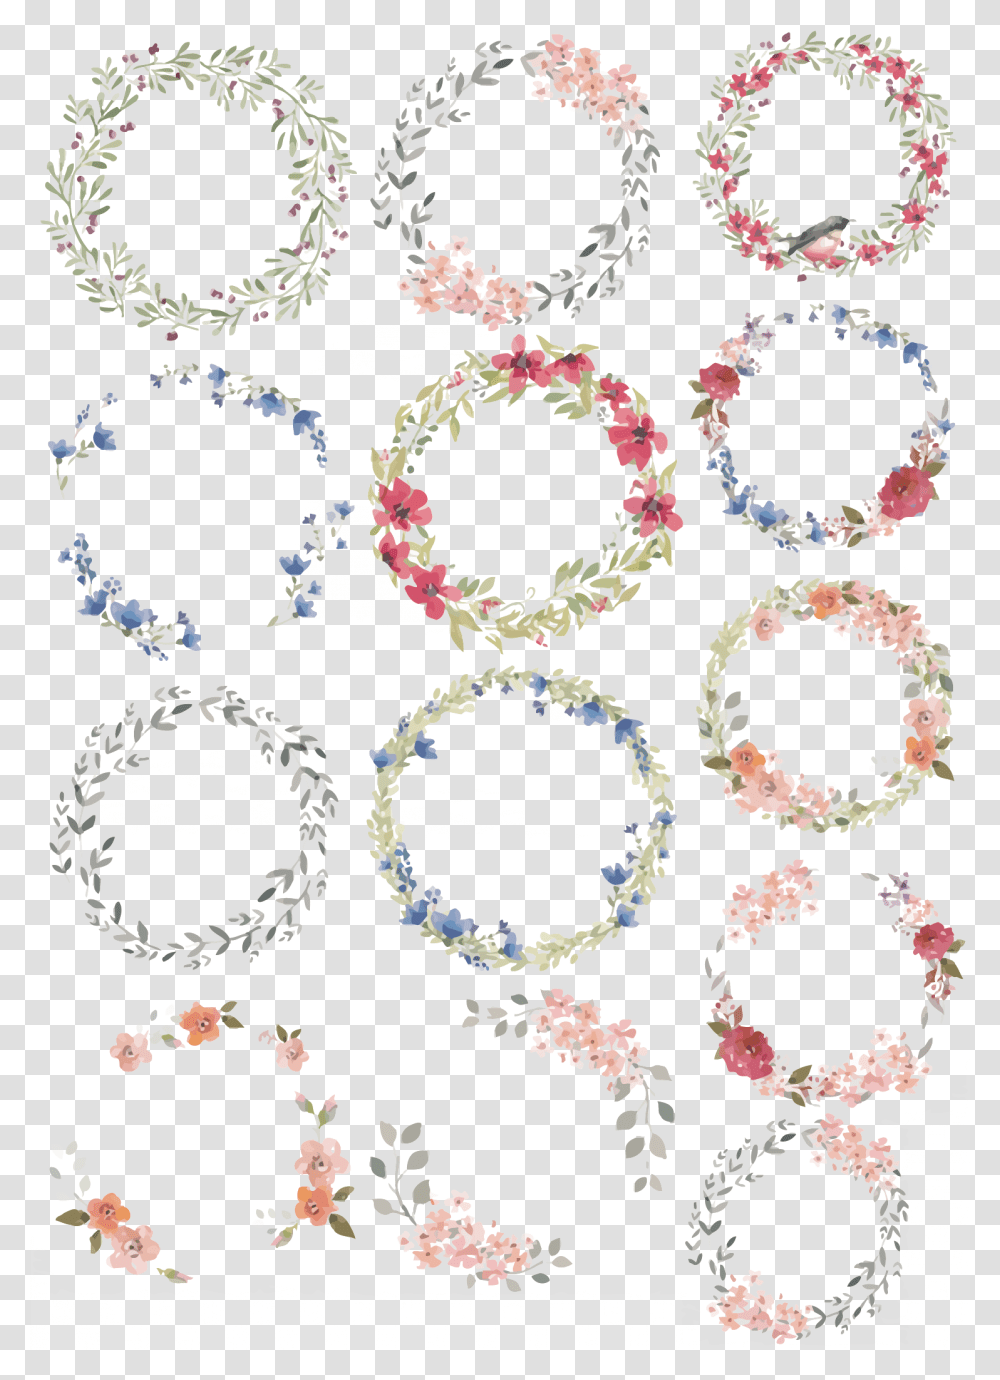 Anar Clipart Dibujo Corona De Flores, Floral Design, Pattern Transparent Png